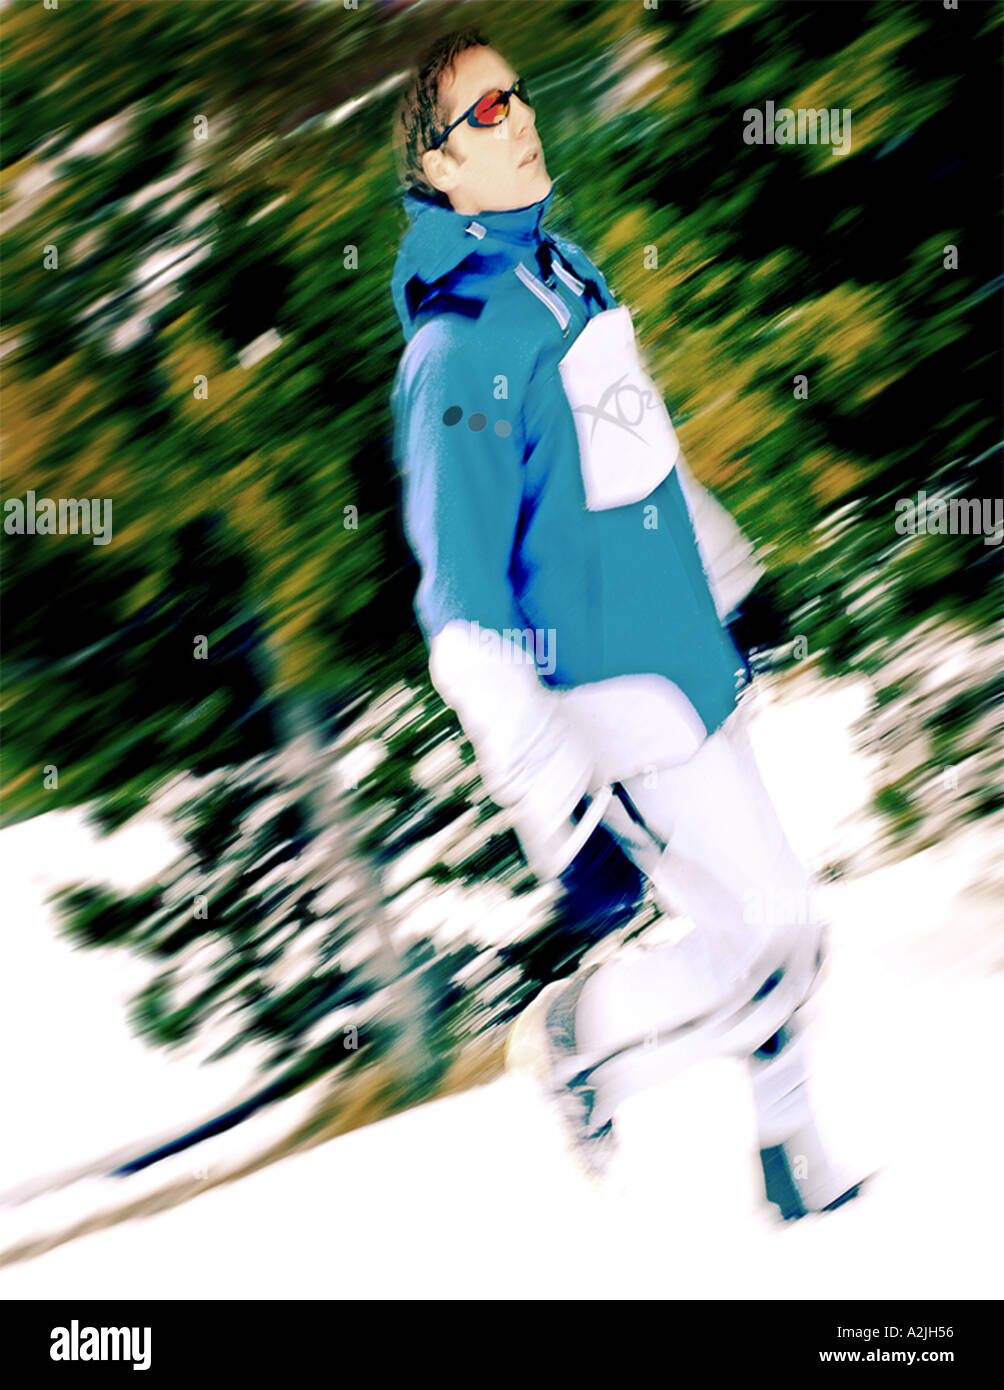 Fotografía editorial de un varón/mujer de 25 años de edad vestían ropa de esquí/snowboard. Foto de stock